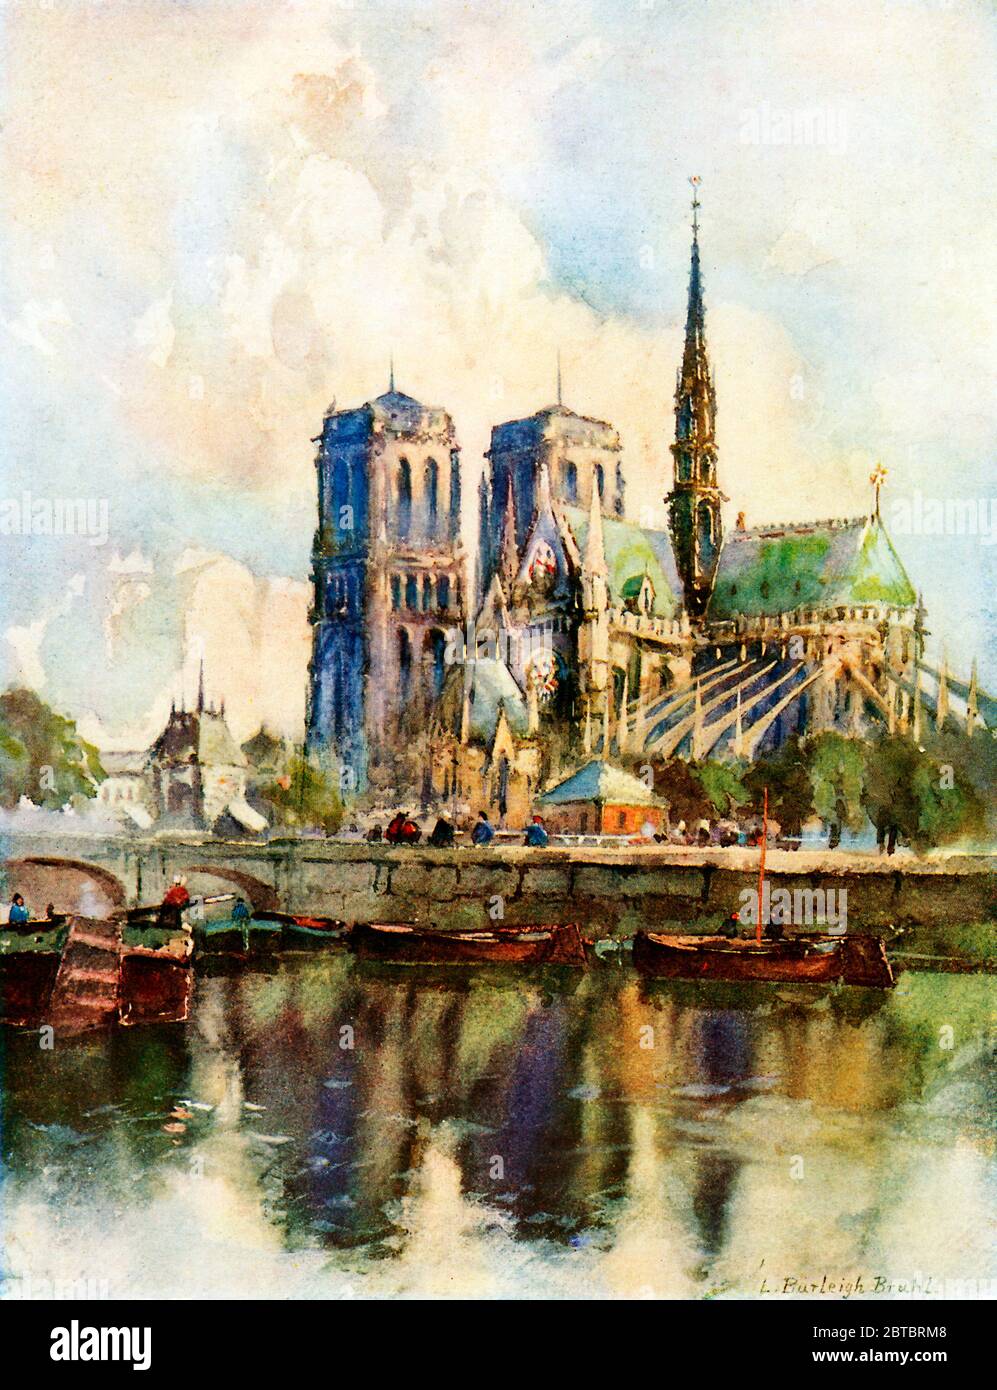 Notre Dame, Paris, 1917 acuarela de L Burleigh Bruhl de la icónica catedral en la Ile de la Cité en el río Sena Foto de stock